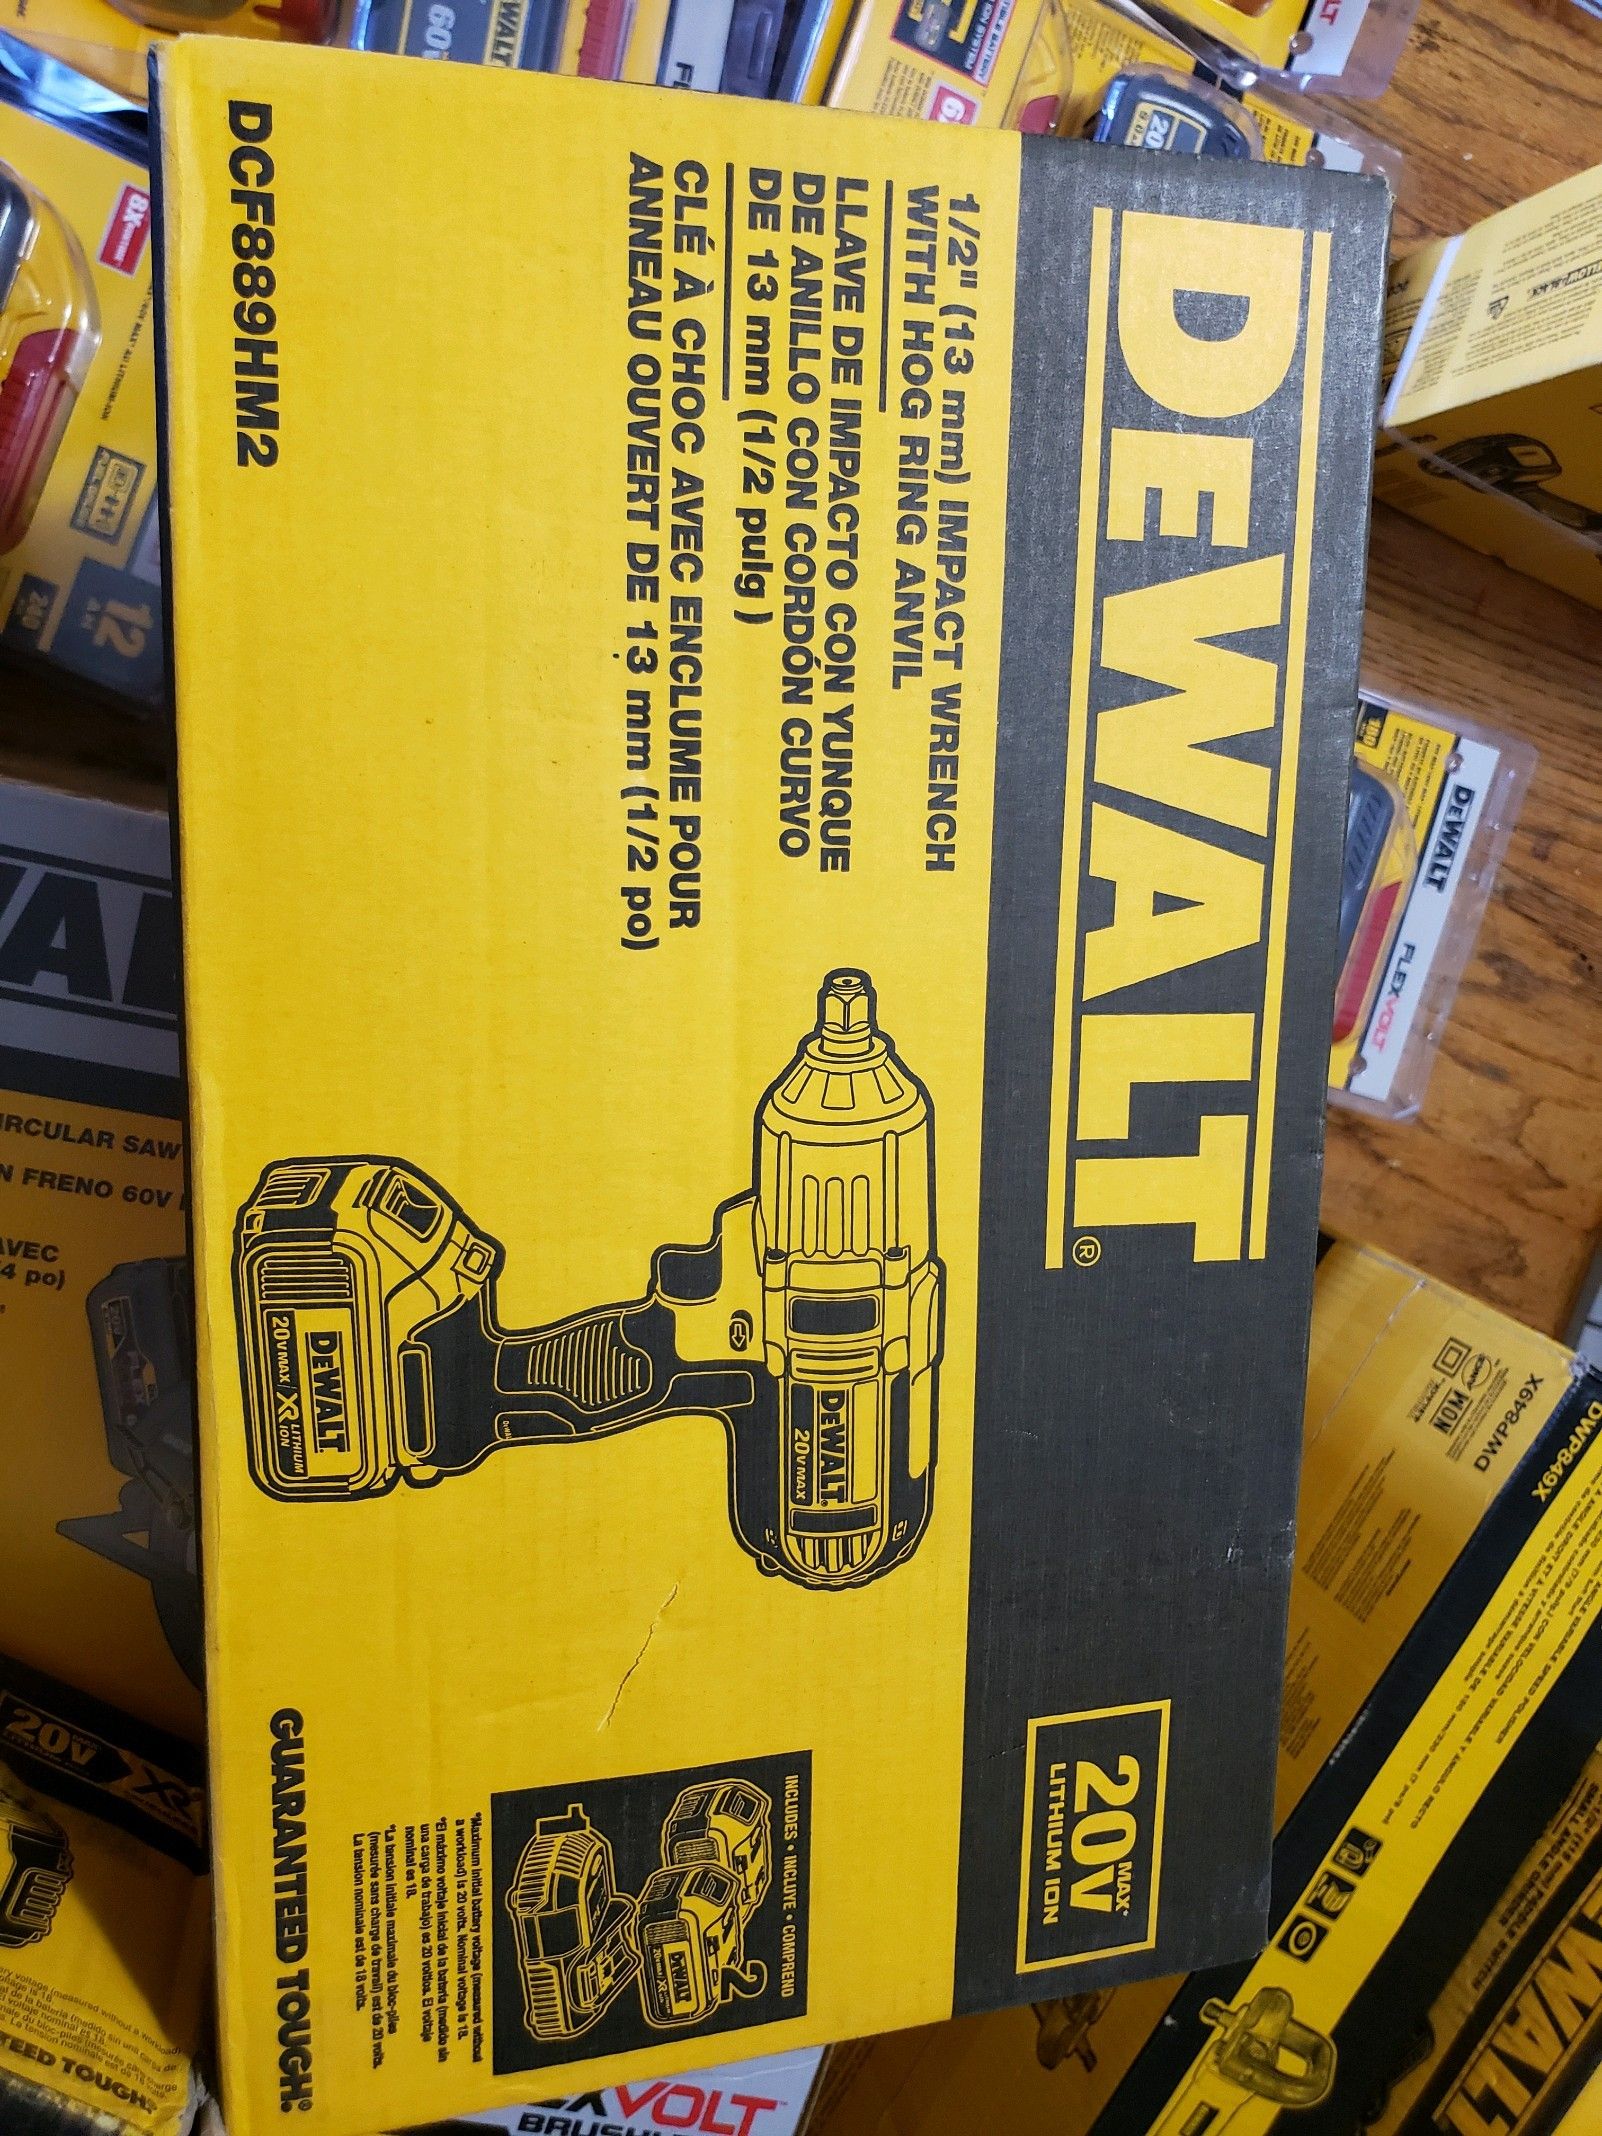 Dewalt DCF889HM2 20v 1/2" Impact Wrench w/ Hog Ring Anvil Kit w/ (2) 20v 4ah batteries